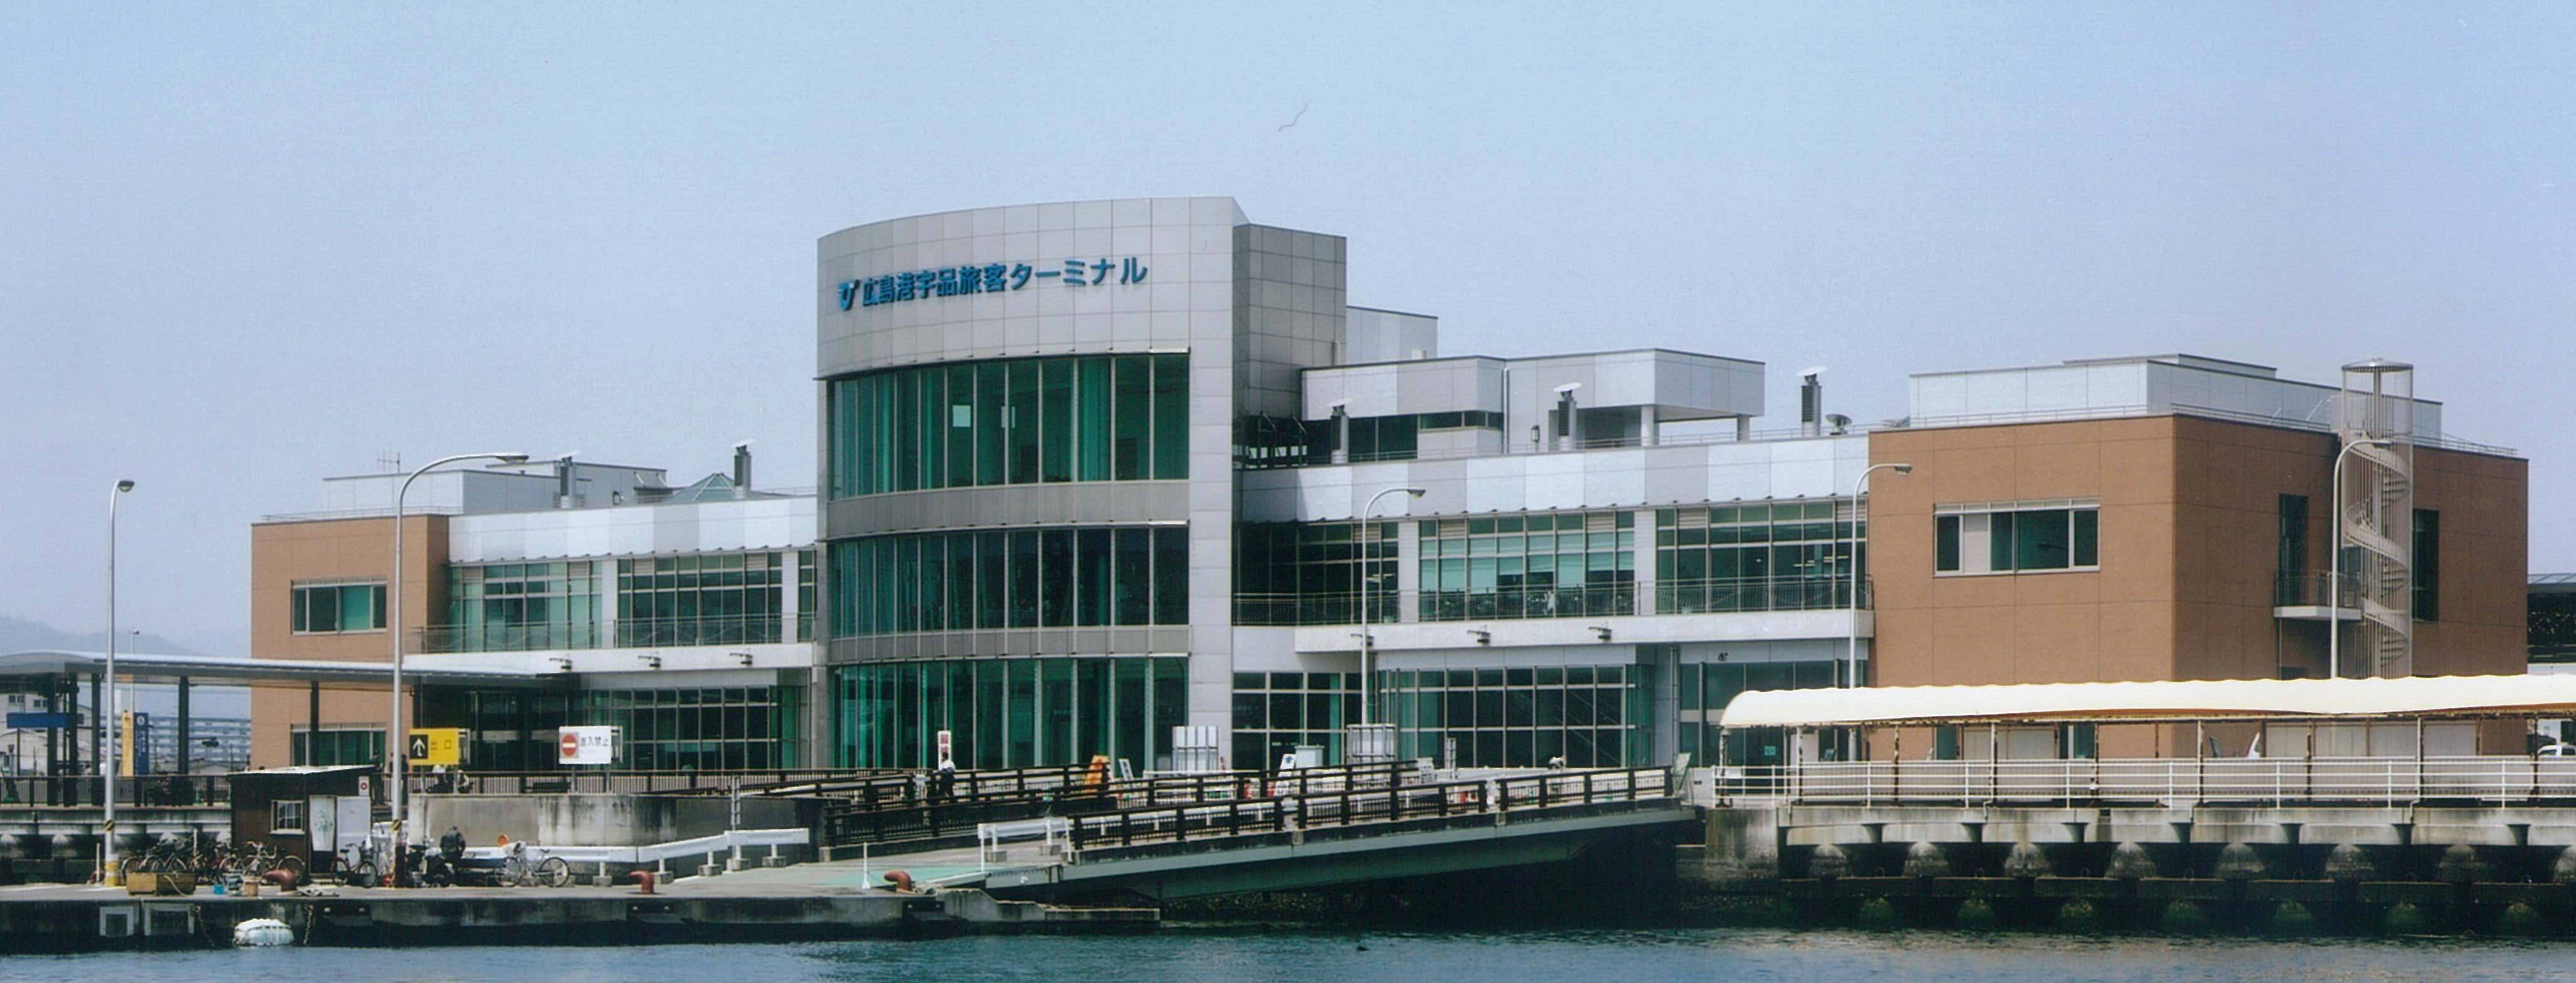 広島港宇品旅客ターミナルのタイトル画像